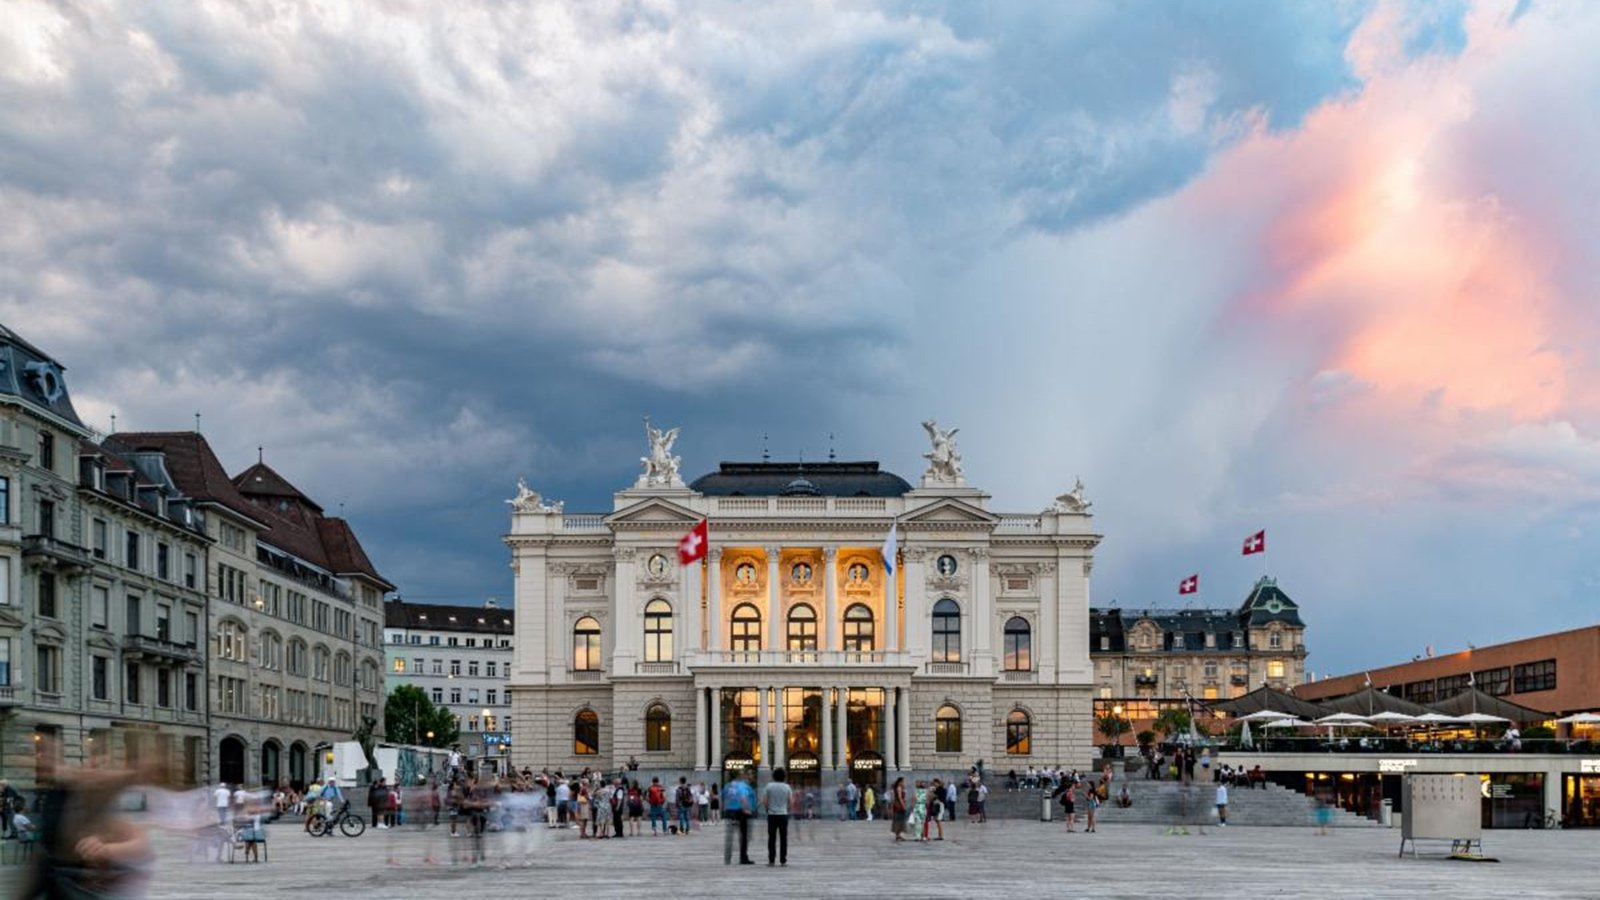 The Zurich Opera House